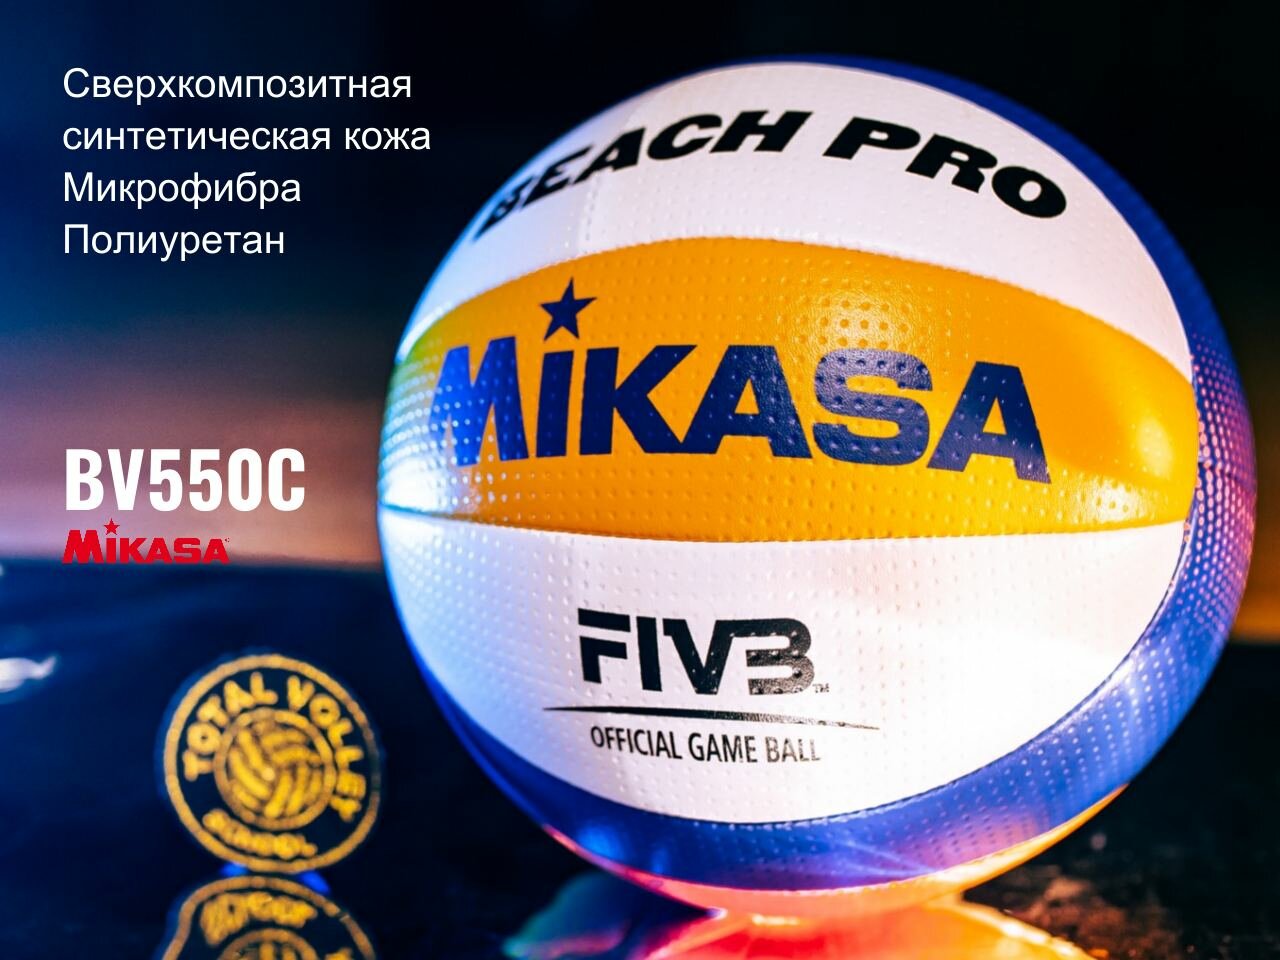 Пляжный волейбольный мяч Mikasa bv550c Beach PRO